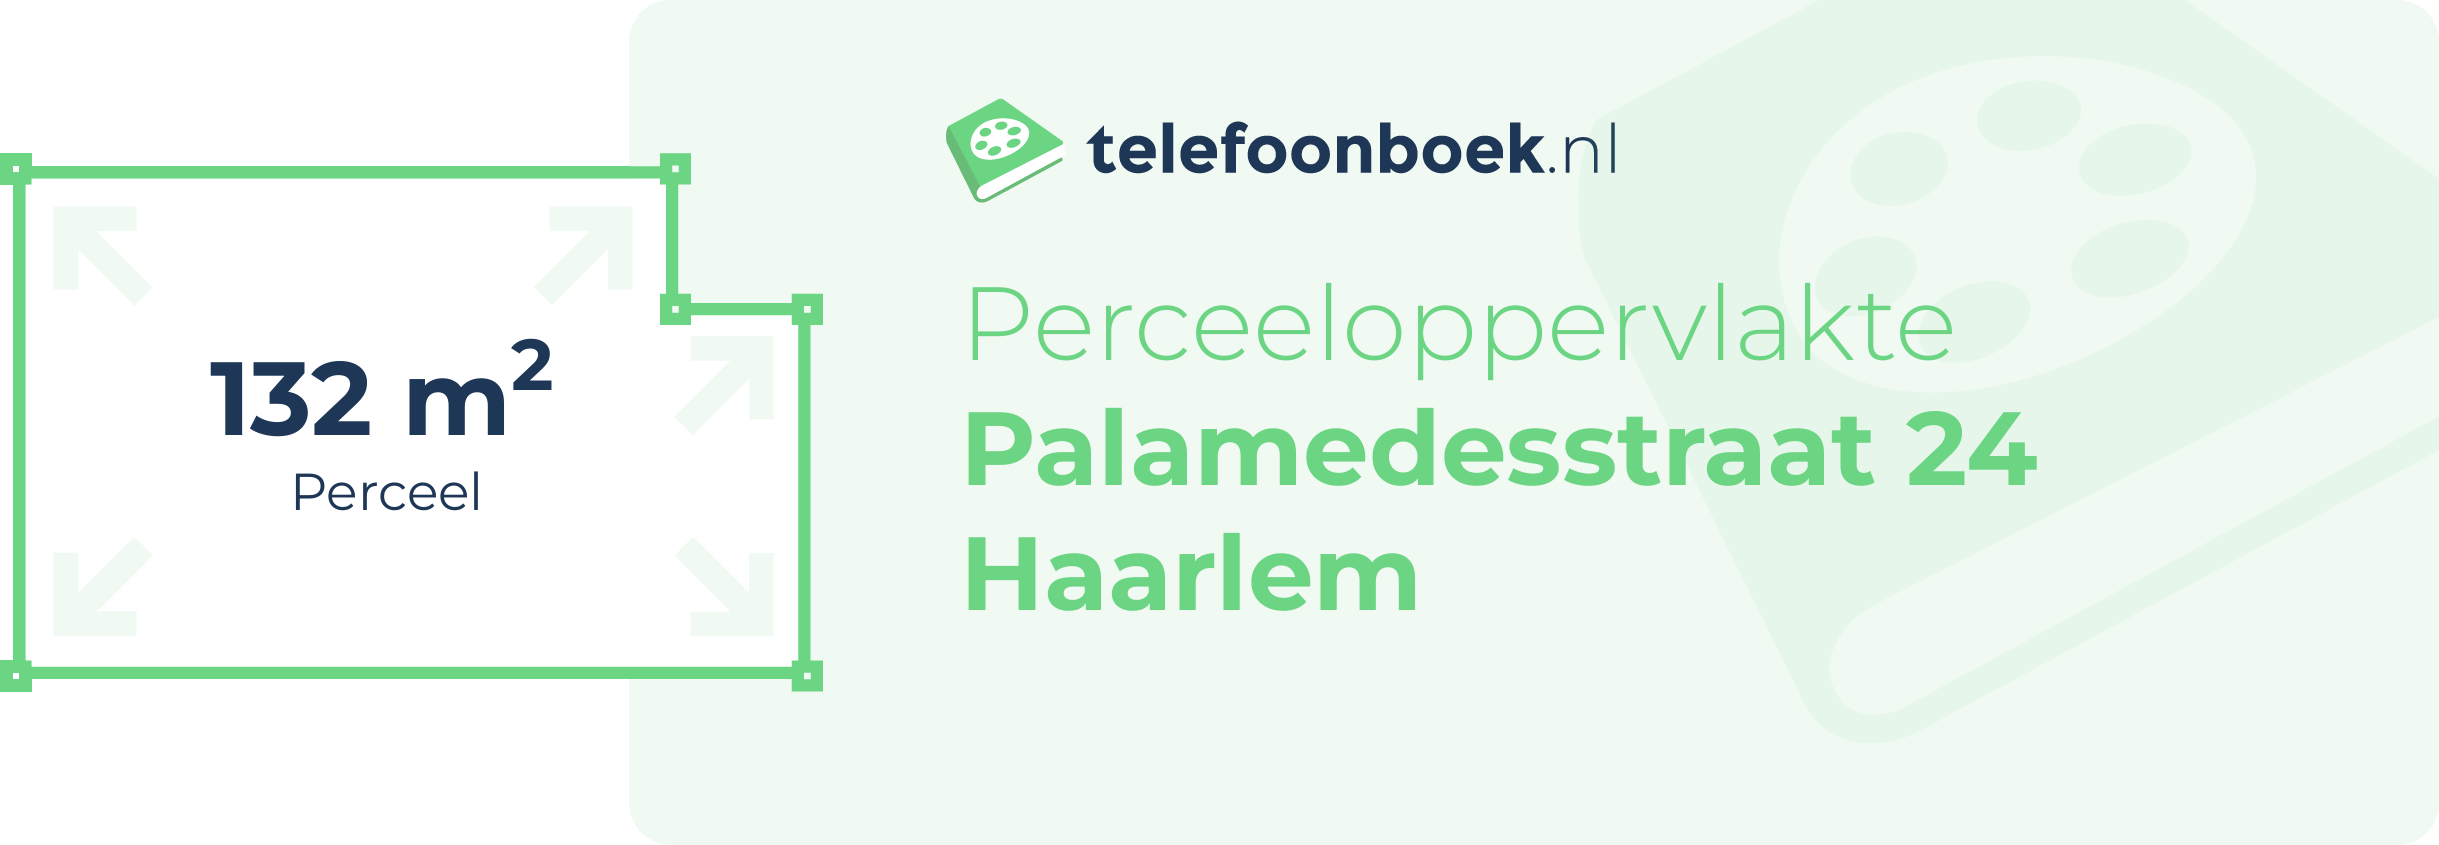 Perceeloppervlakte Palamedesstraat 24 Haarlem